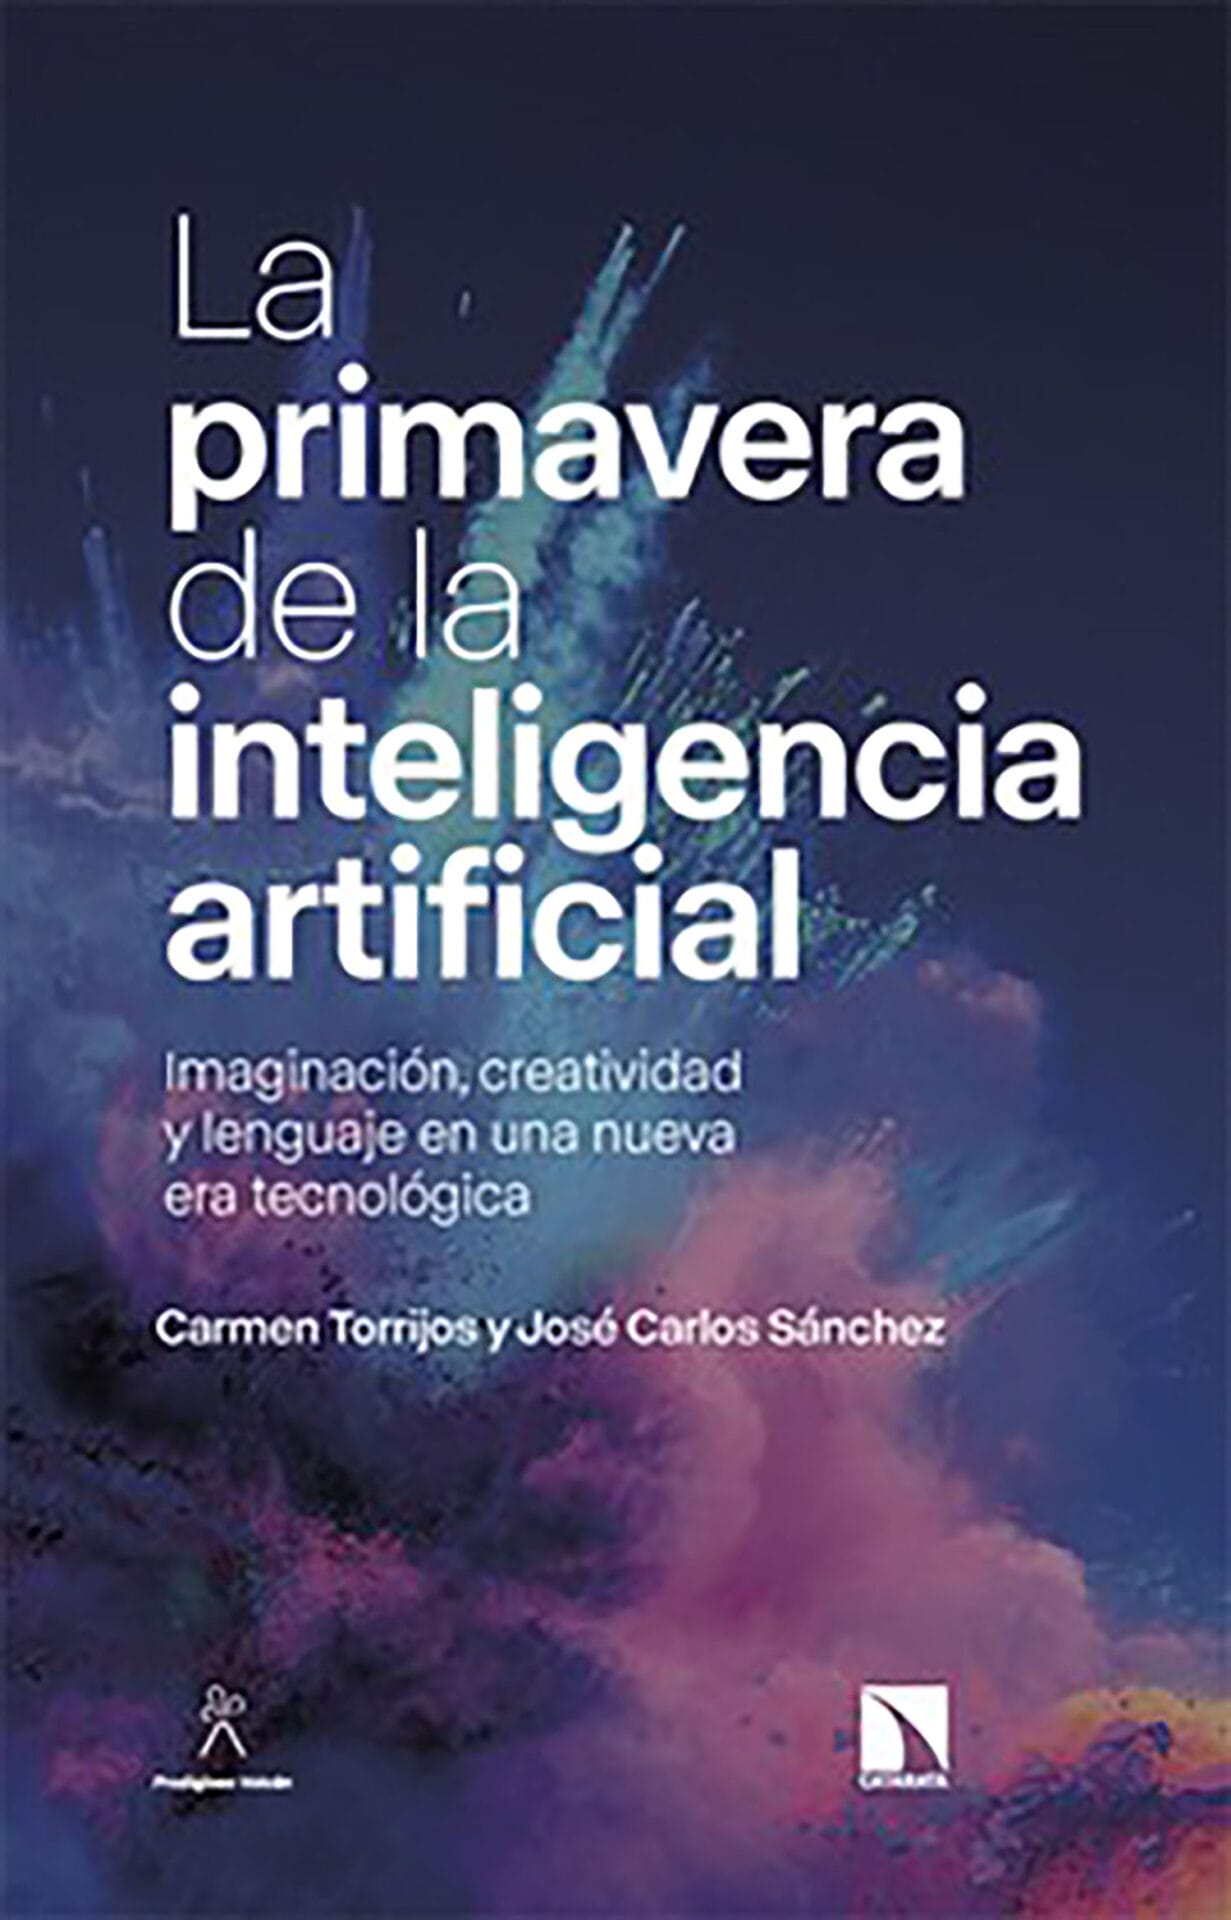 La primavera de la inteligencia artificial, de Carmen Torrijos y José Carlos Sánchez